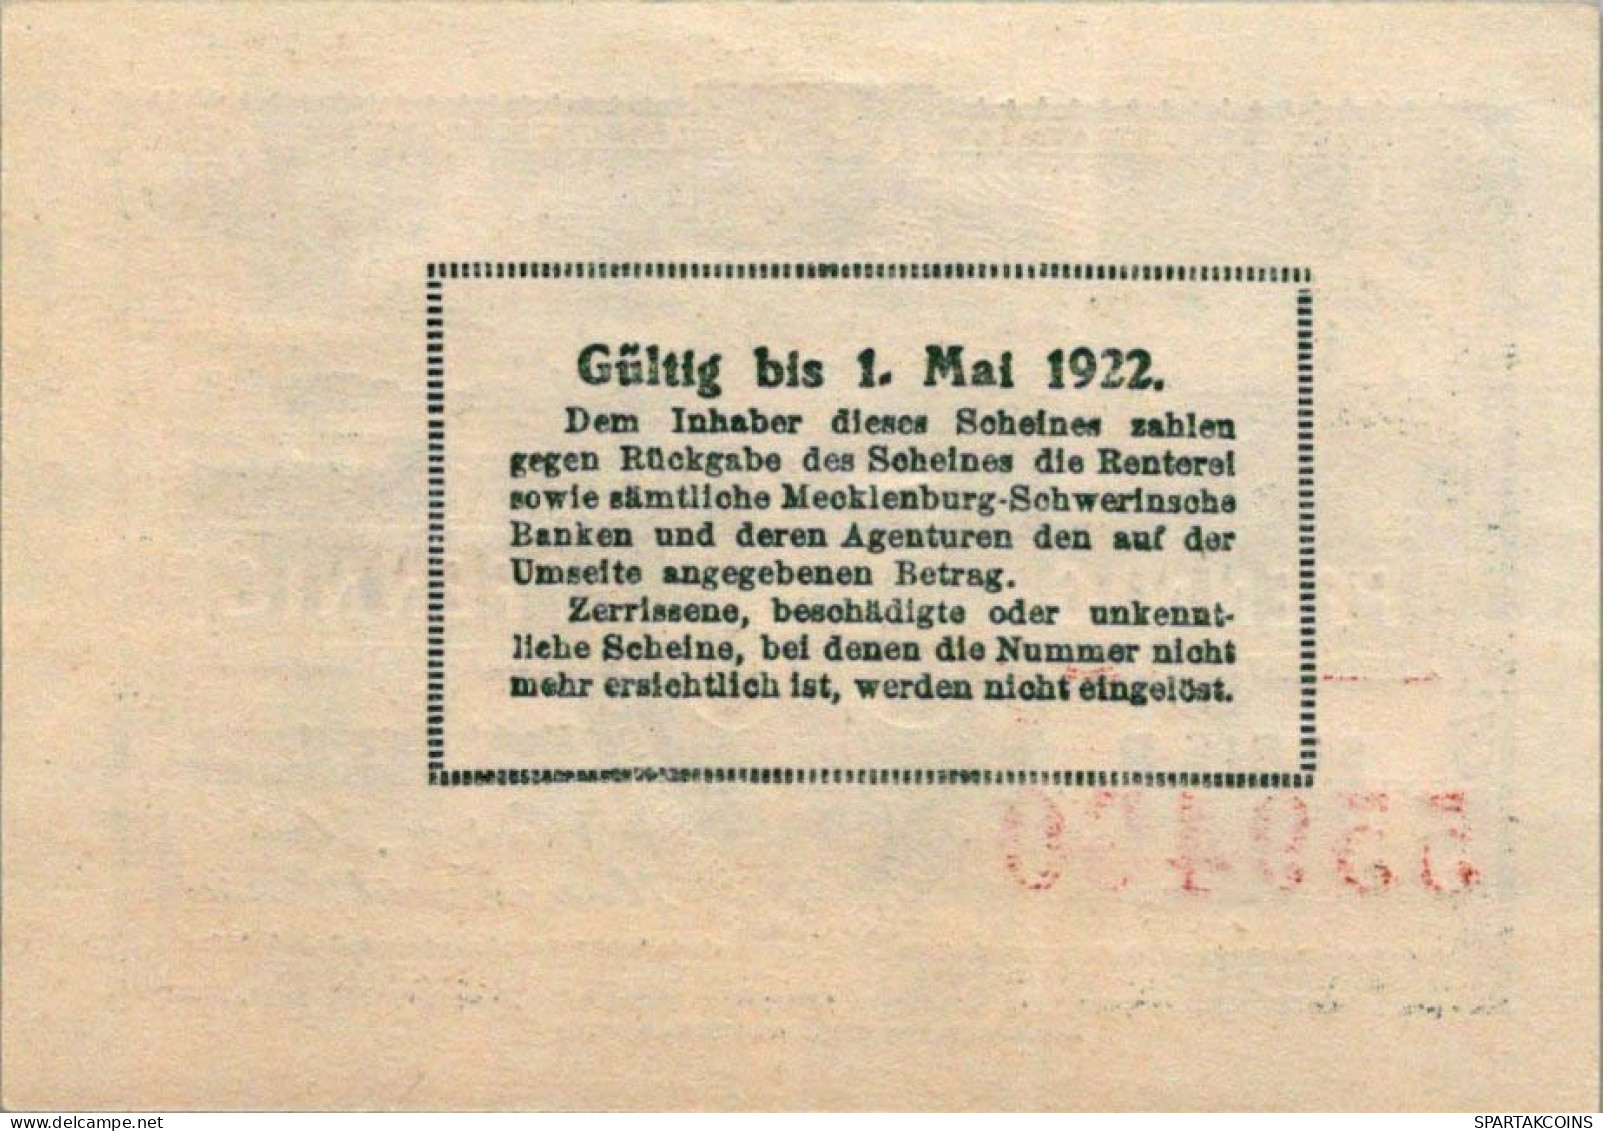 50 PFENNIG 1922 MECKLENBURG-SCHWERIN Mecklenburg-Schwerin DEUTSCHLAND #PG029 - [11] Local Banknote Issues